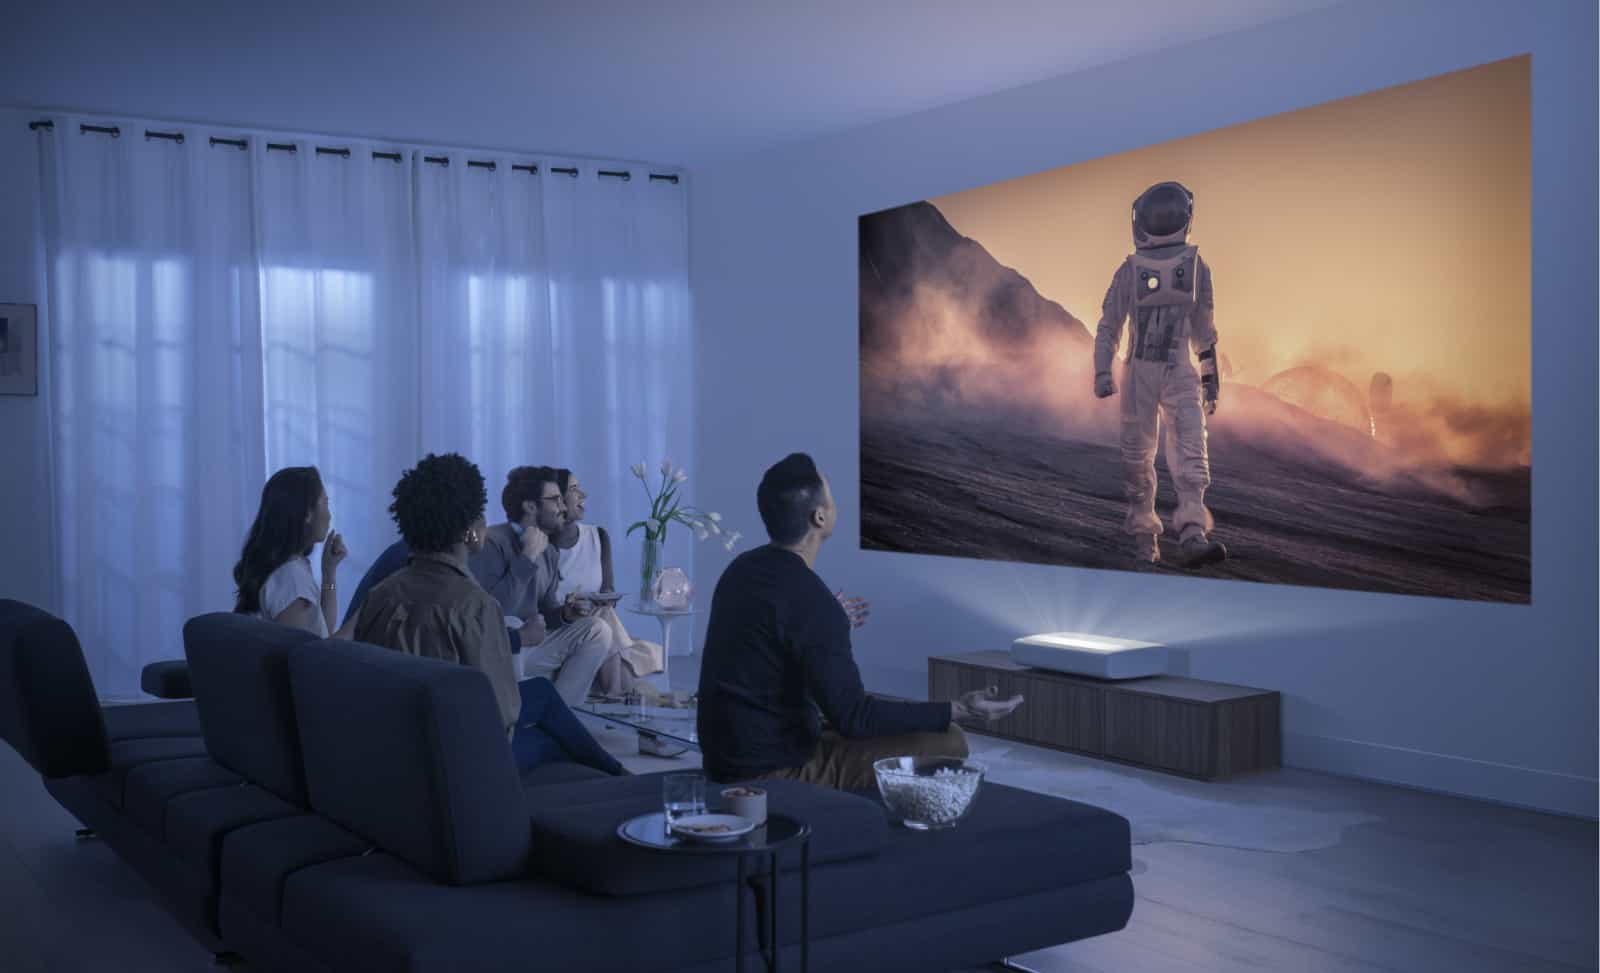 Премьера Samsung превратит всю вашу стену в экран телевизора 4K